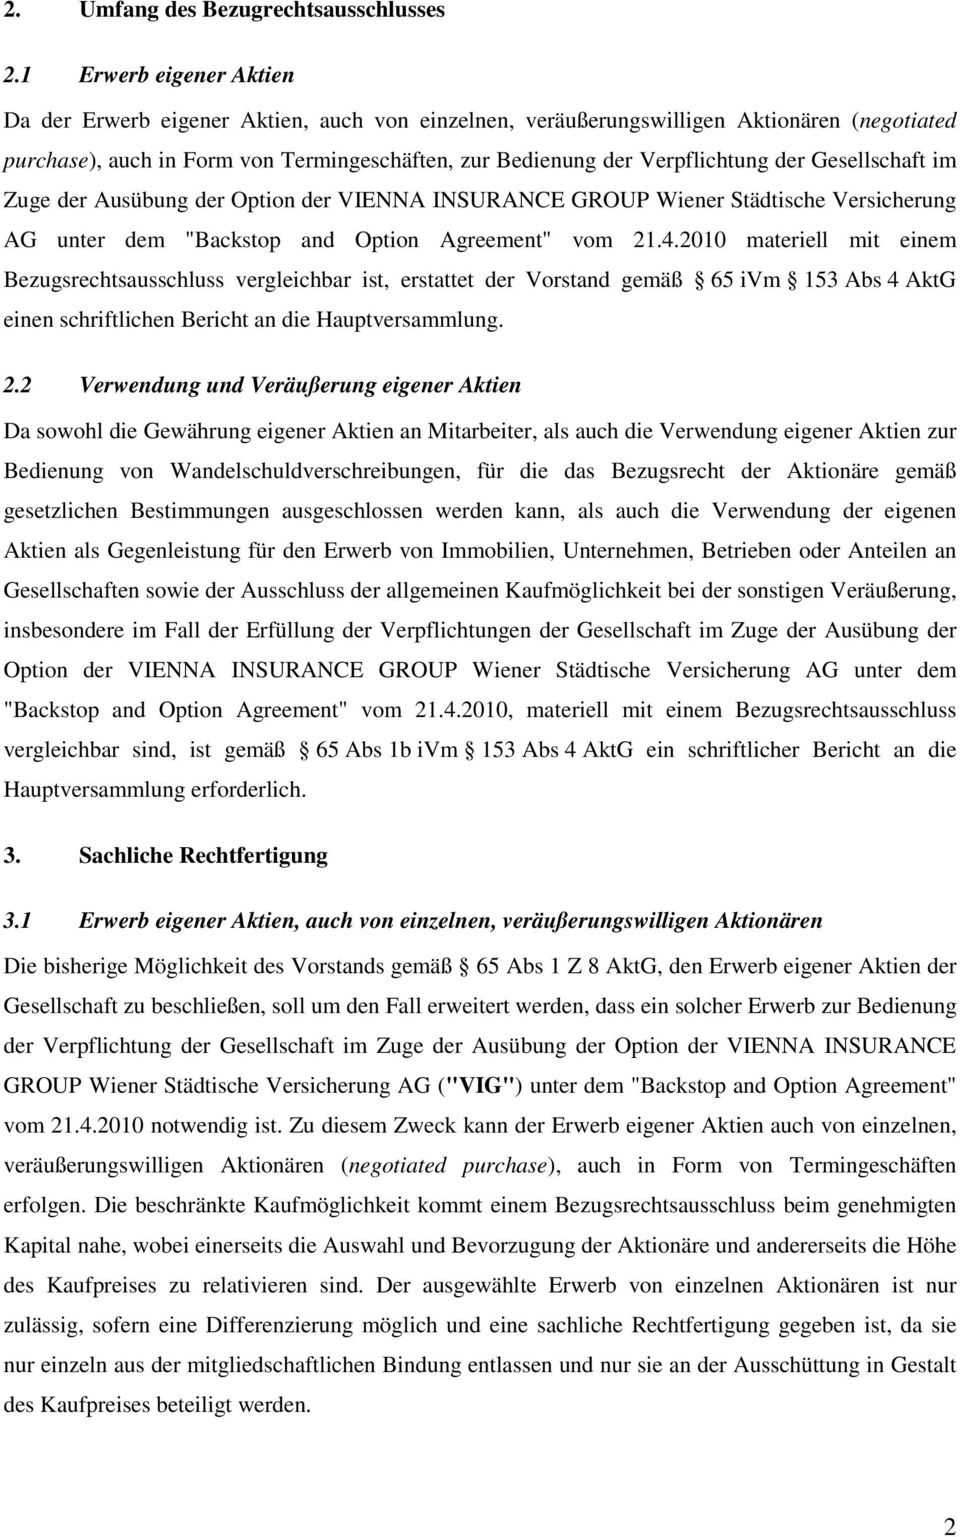 Gesellschaft im Zuge der Ausübung der Option der VIENNA INSURANCE GROUP Wiener Städtische Versicherung AG unter dem "Backstop and Option Agreement" vom 21.4.